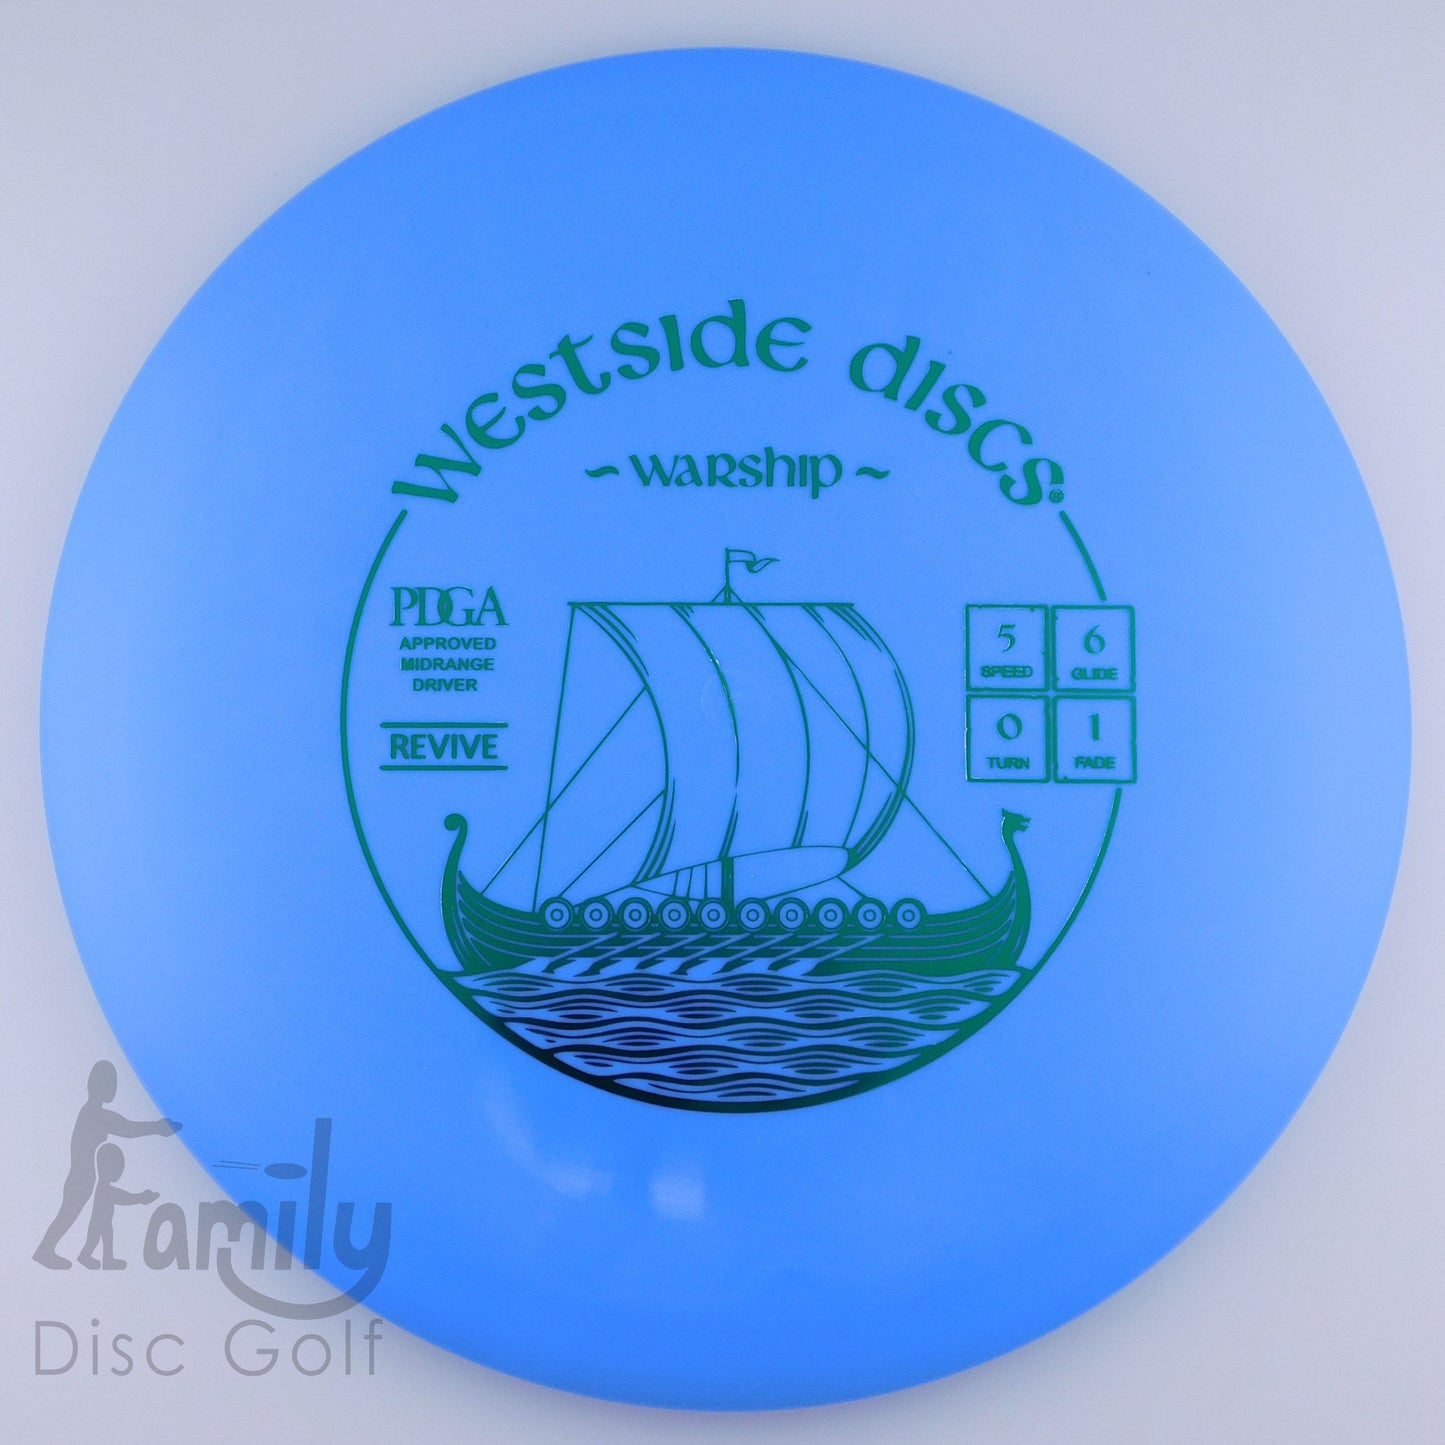 Westside Discs Warship - Revive 5│6│0│1 178g - Blue - Westside Discs Warship - Revive - 100681